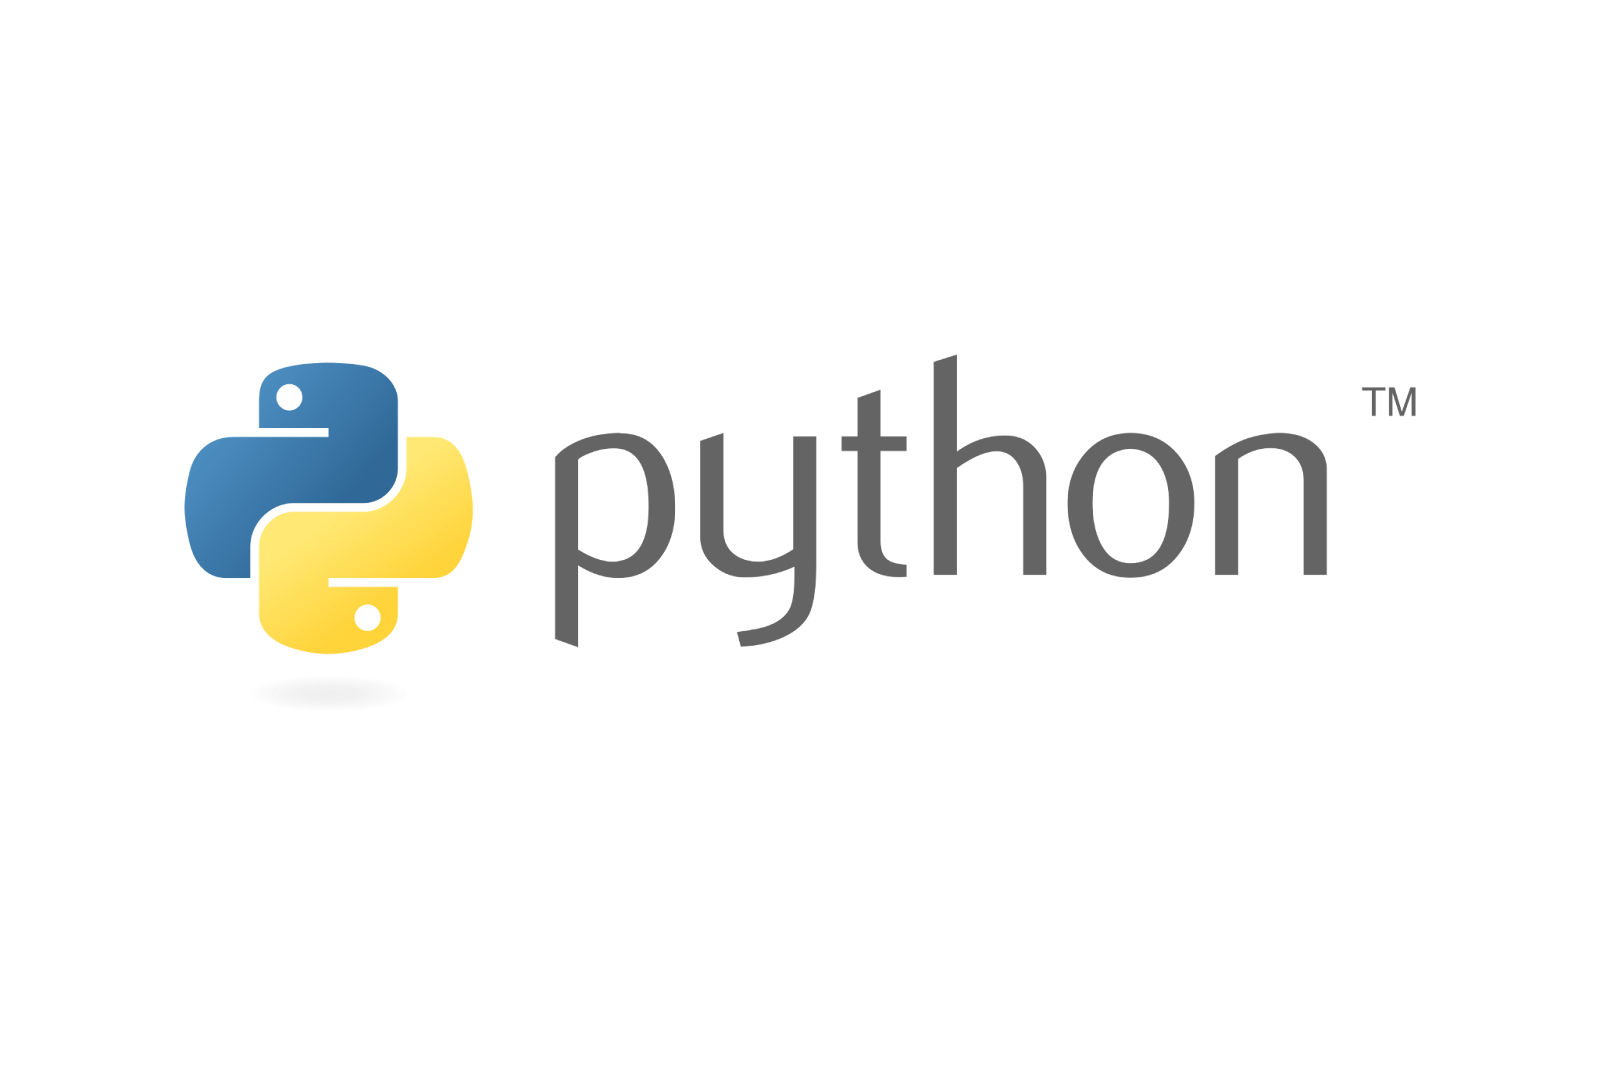 Python and logo